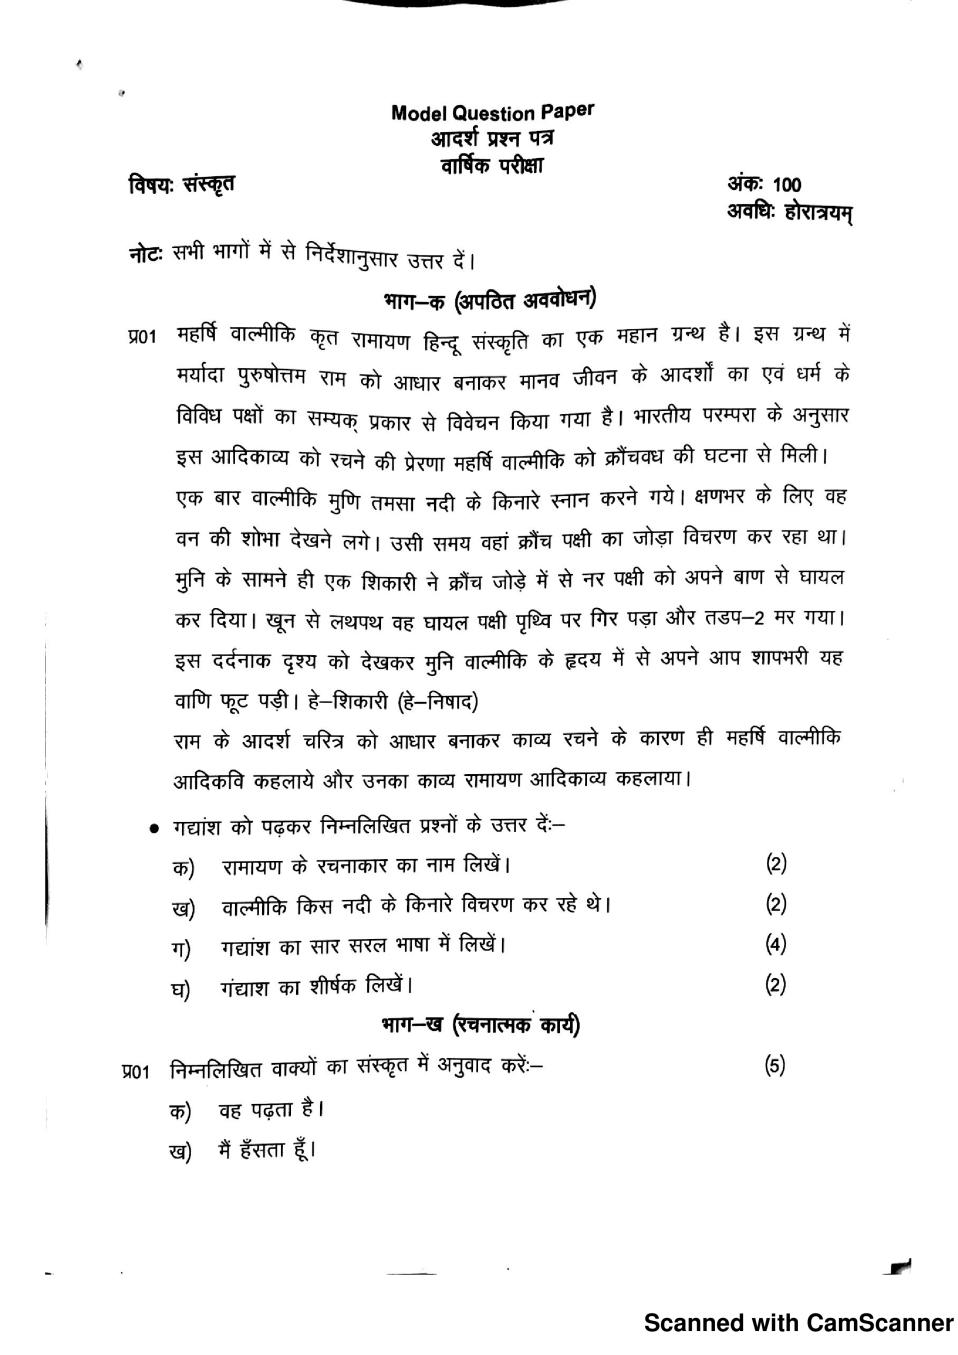 JKBOSE 11th Model Paper Sanskrit - Page 1